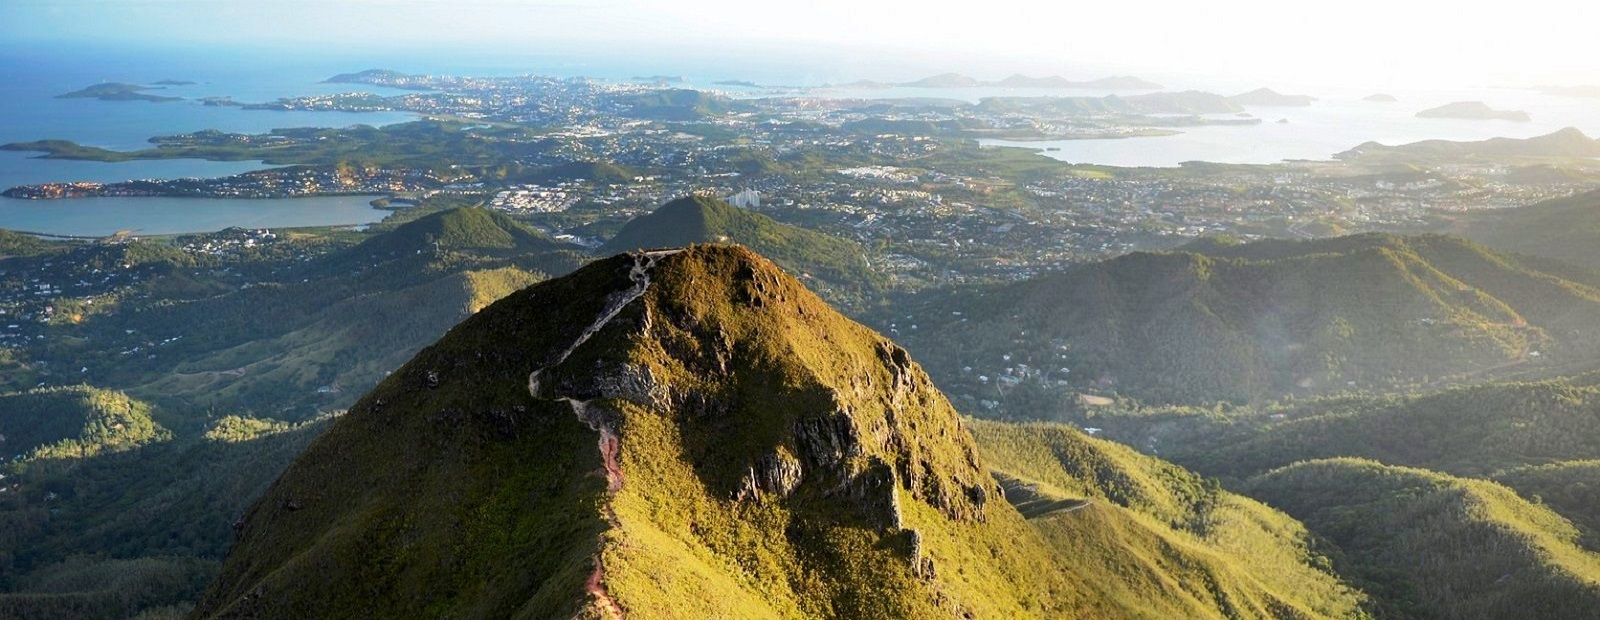 Image de la Réunion